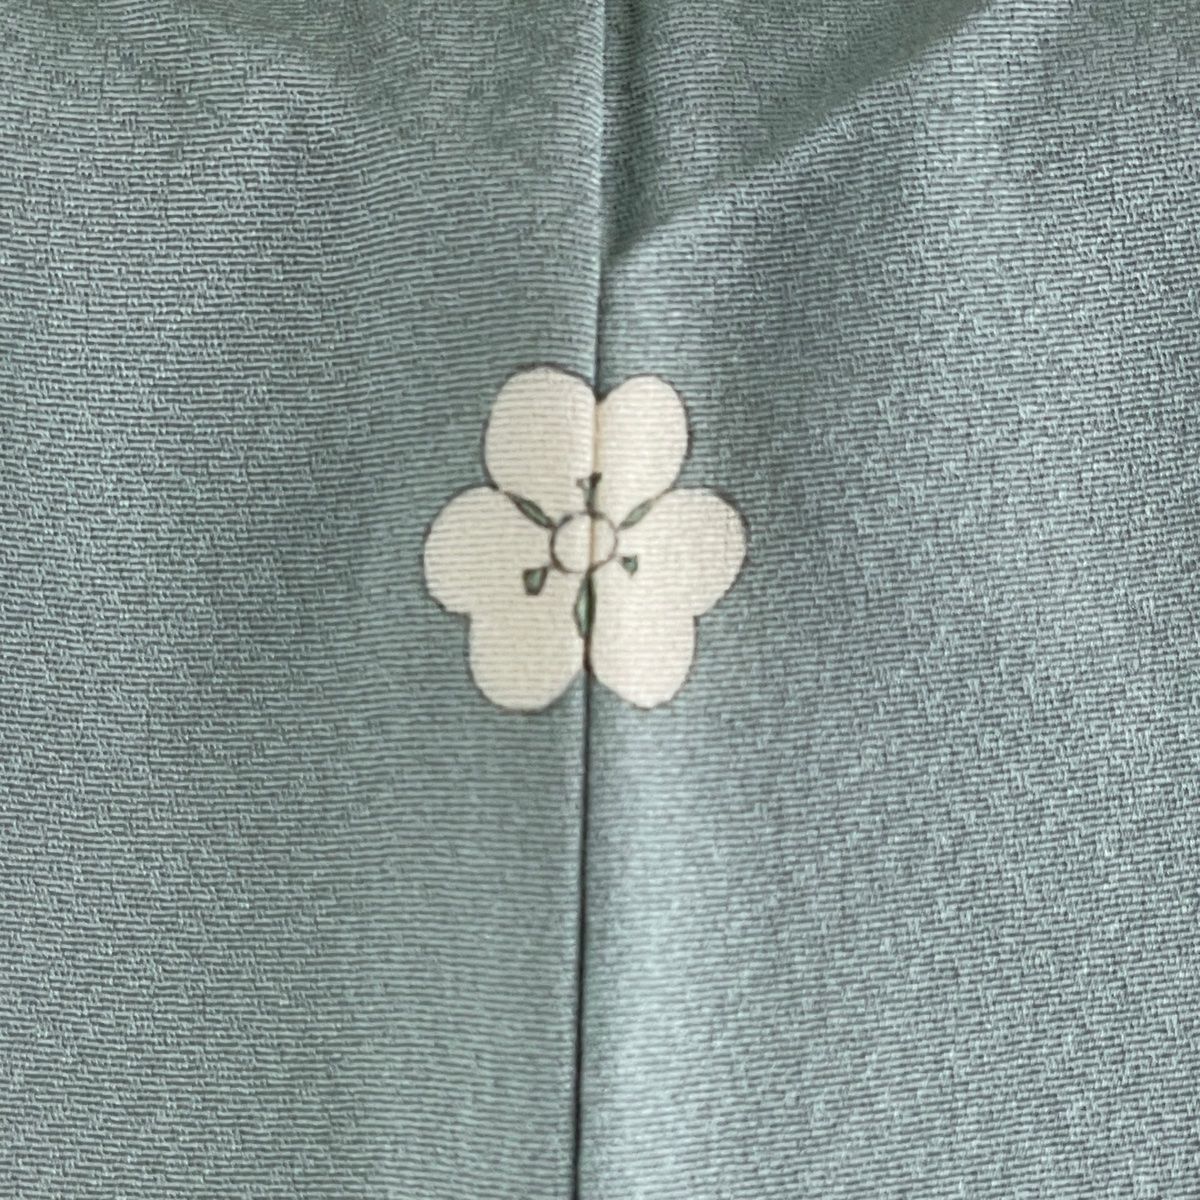 色留袖 逸品 落款あり 上野為二 三つ紋 水辺の風景 人物 ぼかし 灰緑